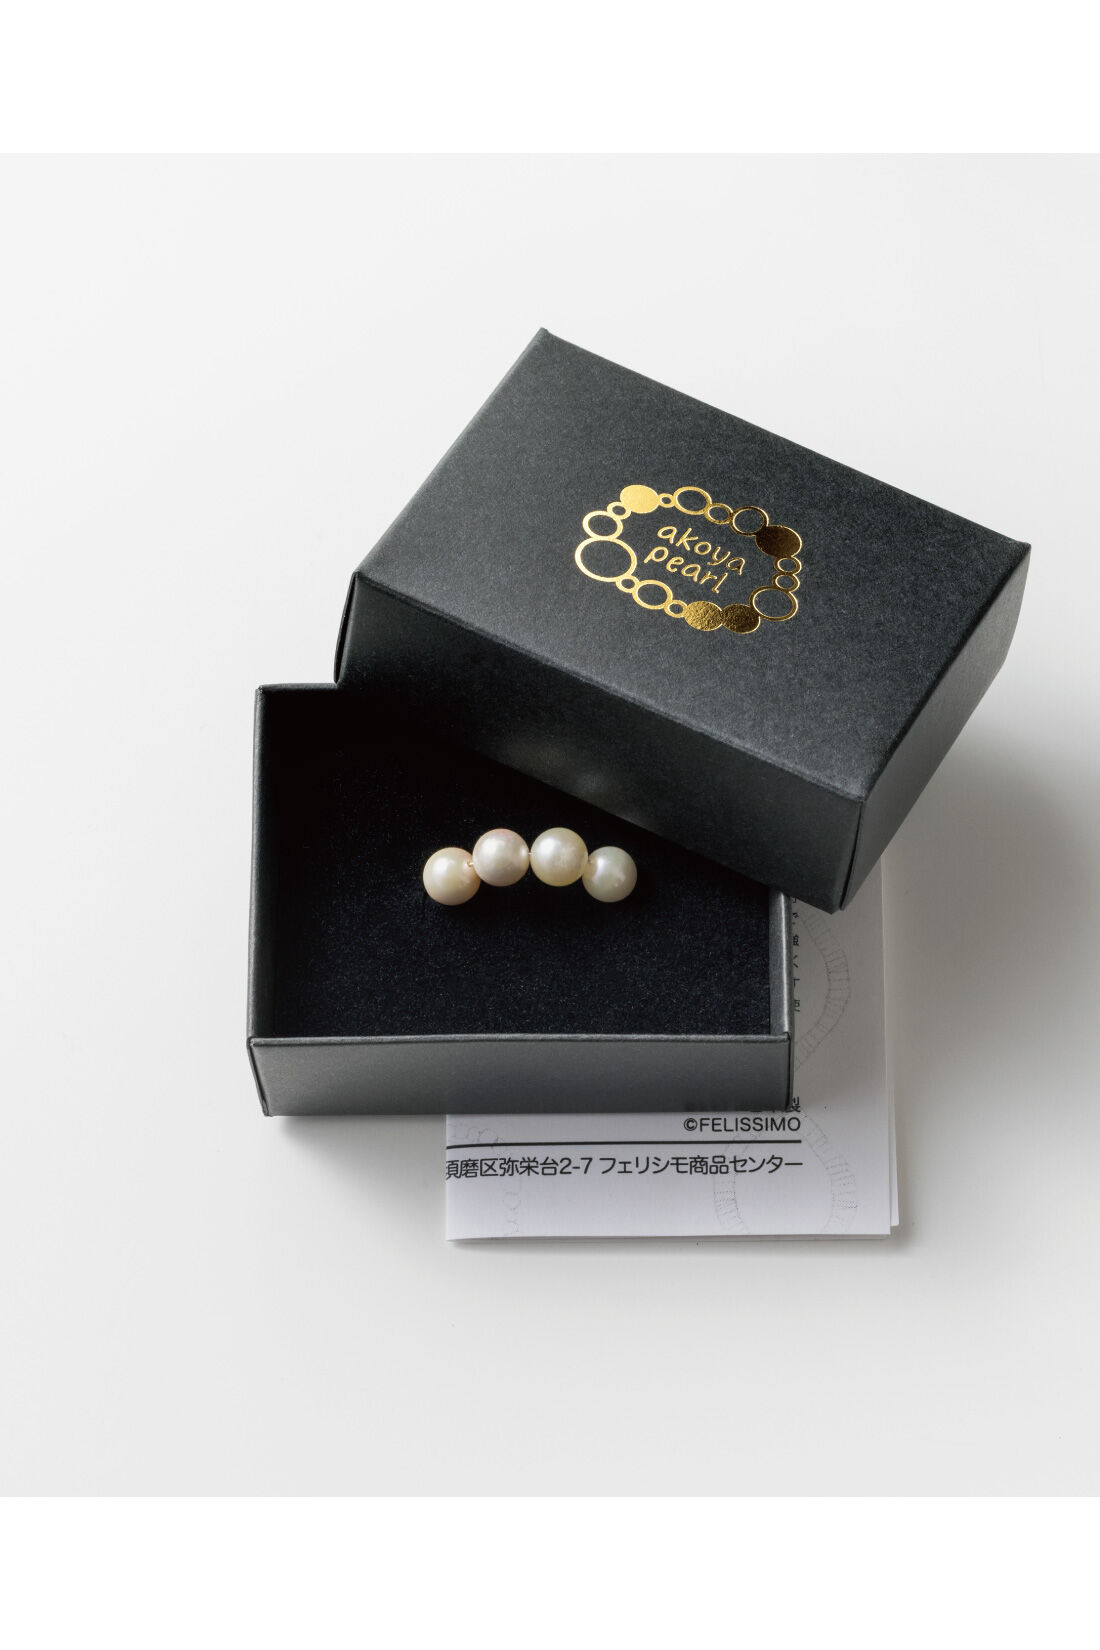 Couturier|自然の造形を愉しむ 日本の海で育った アコヤバロック真珠の会|●1回のお届けセット例です。ベロア調のボックスに入れて、アレンジ例の情報カードも一緒にお届け